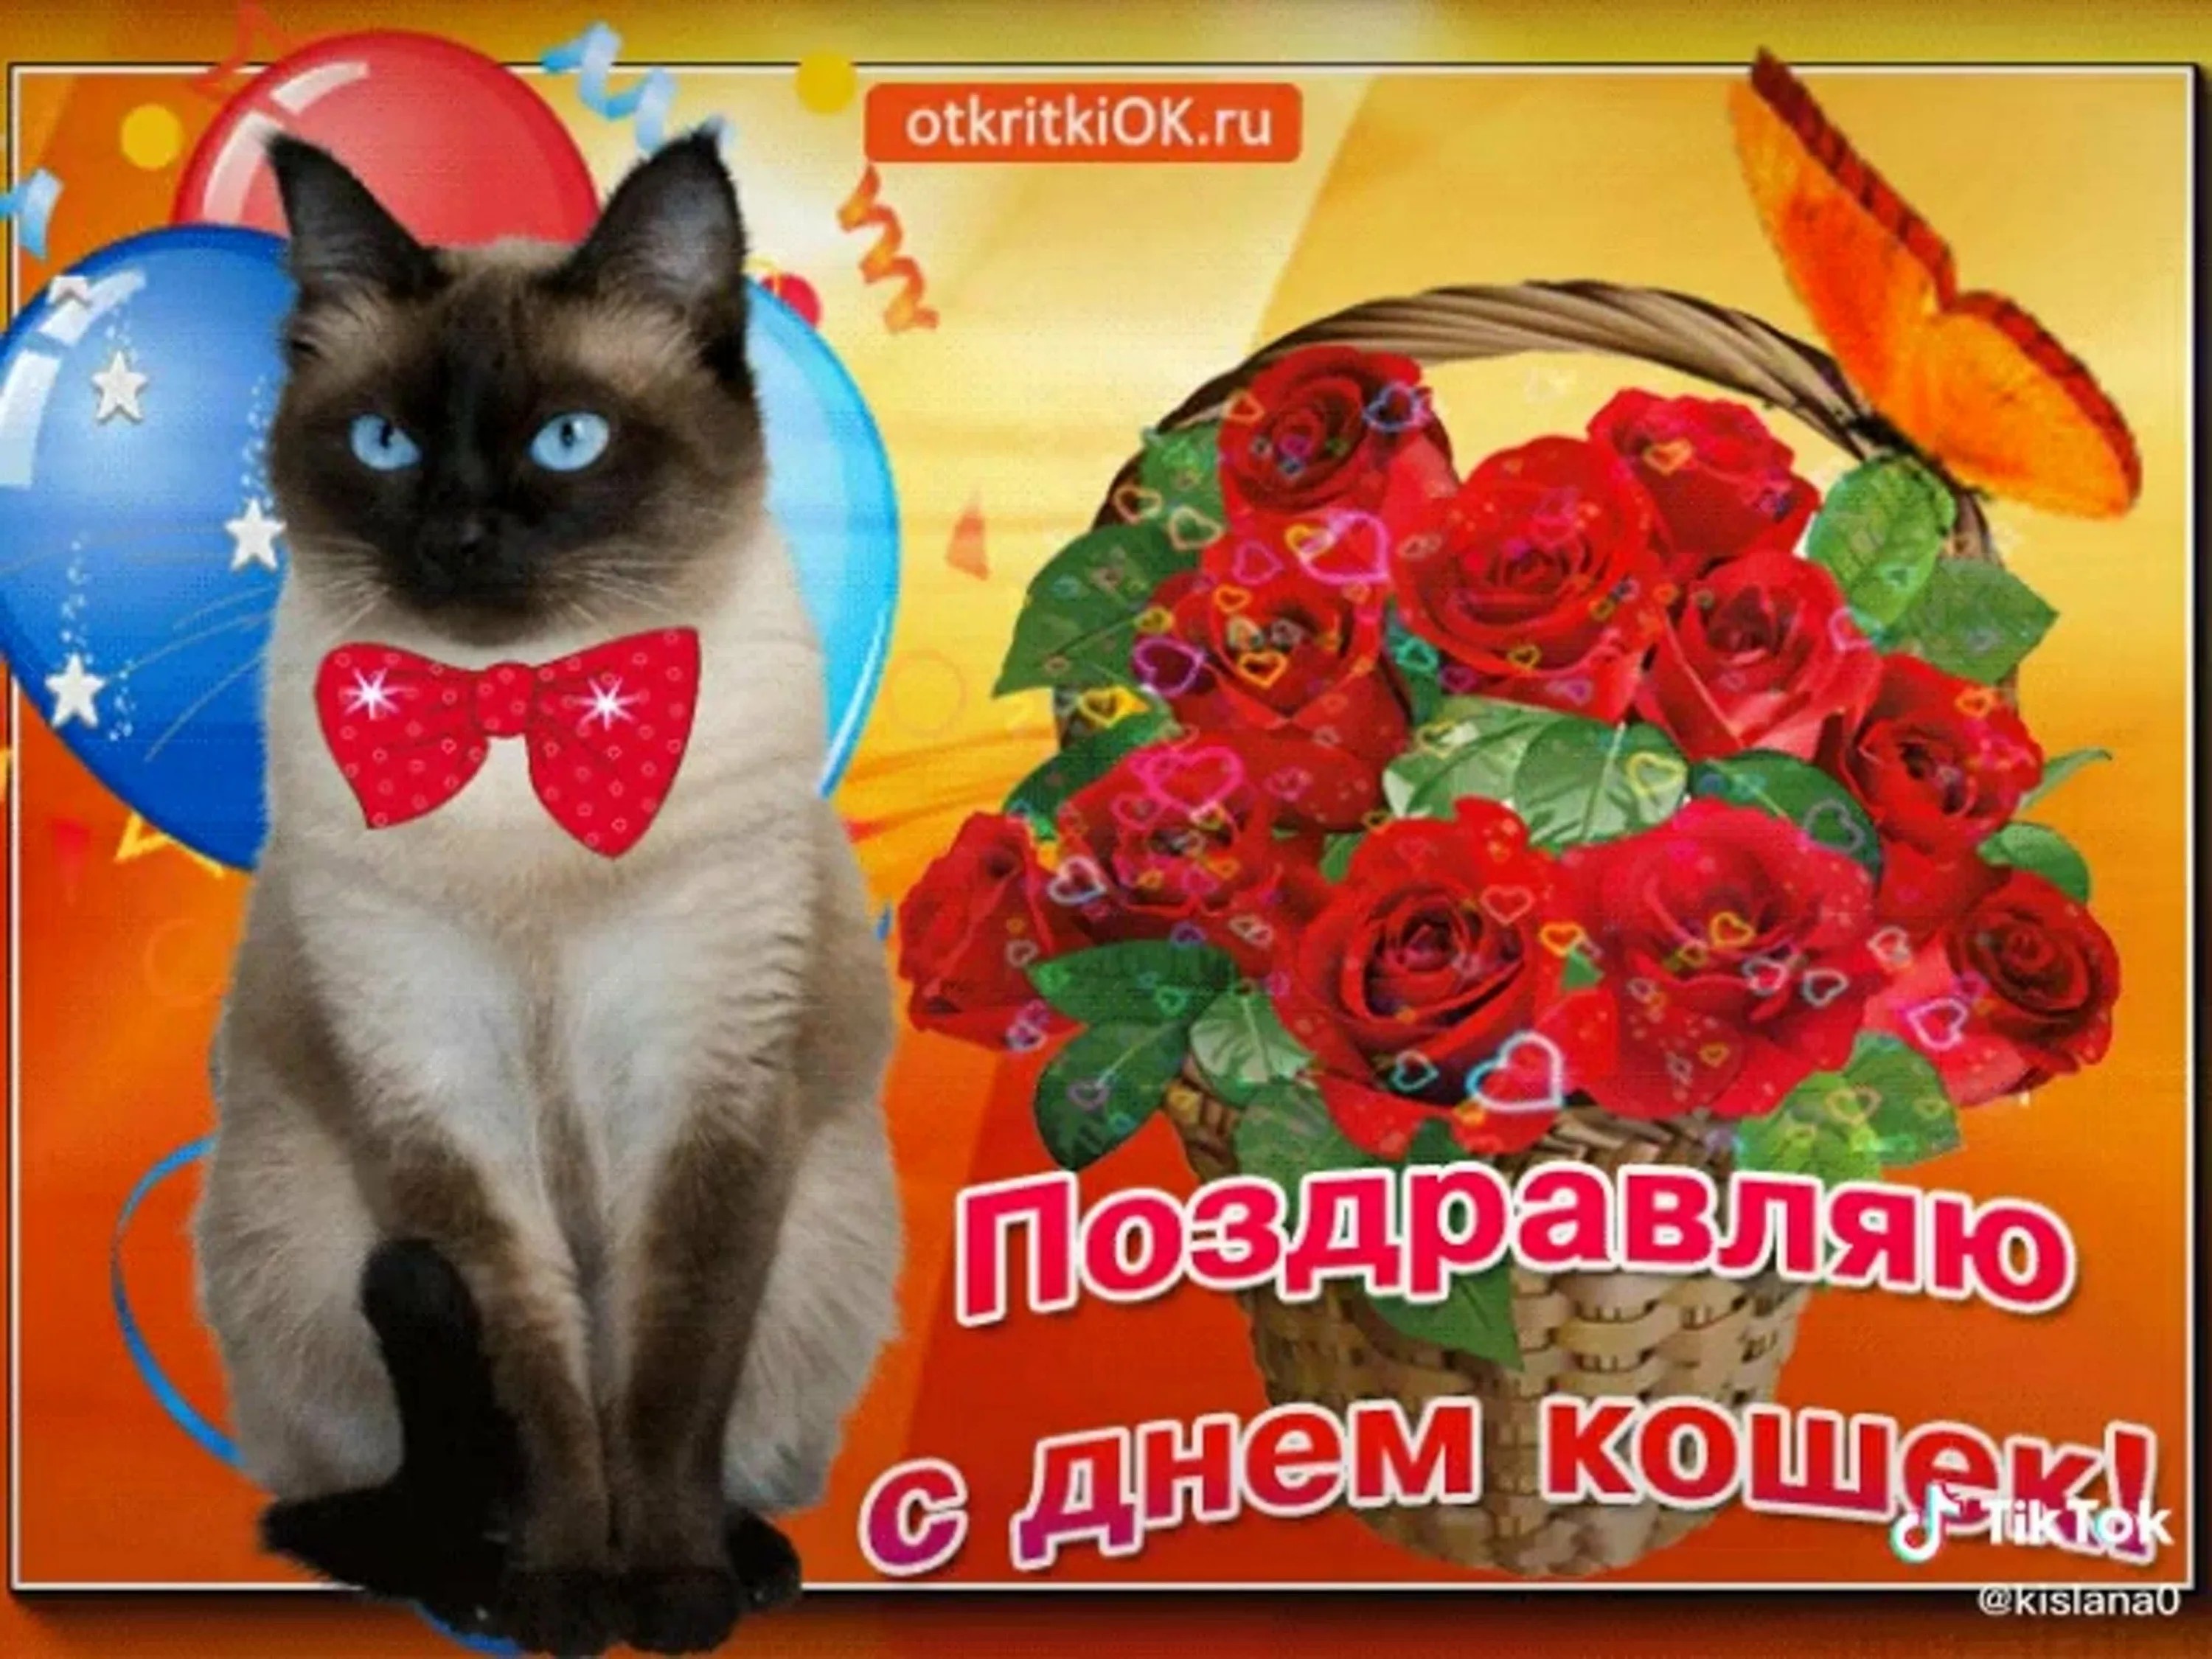 Бесплатные поздравления с днем кошек. День кошек открытки. Поздравление с днем кошек. Всемирный день кошек открытки. Всемирный день кошек поздравления.